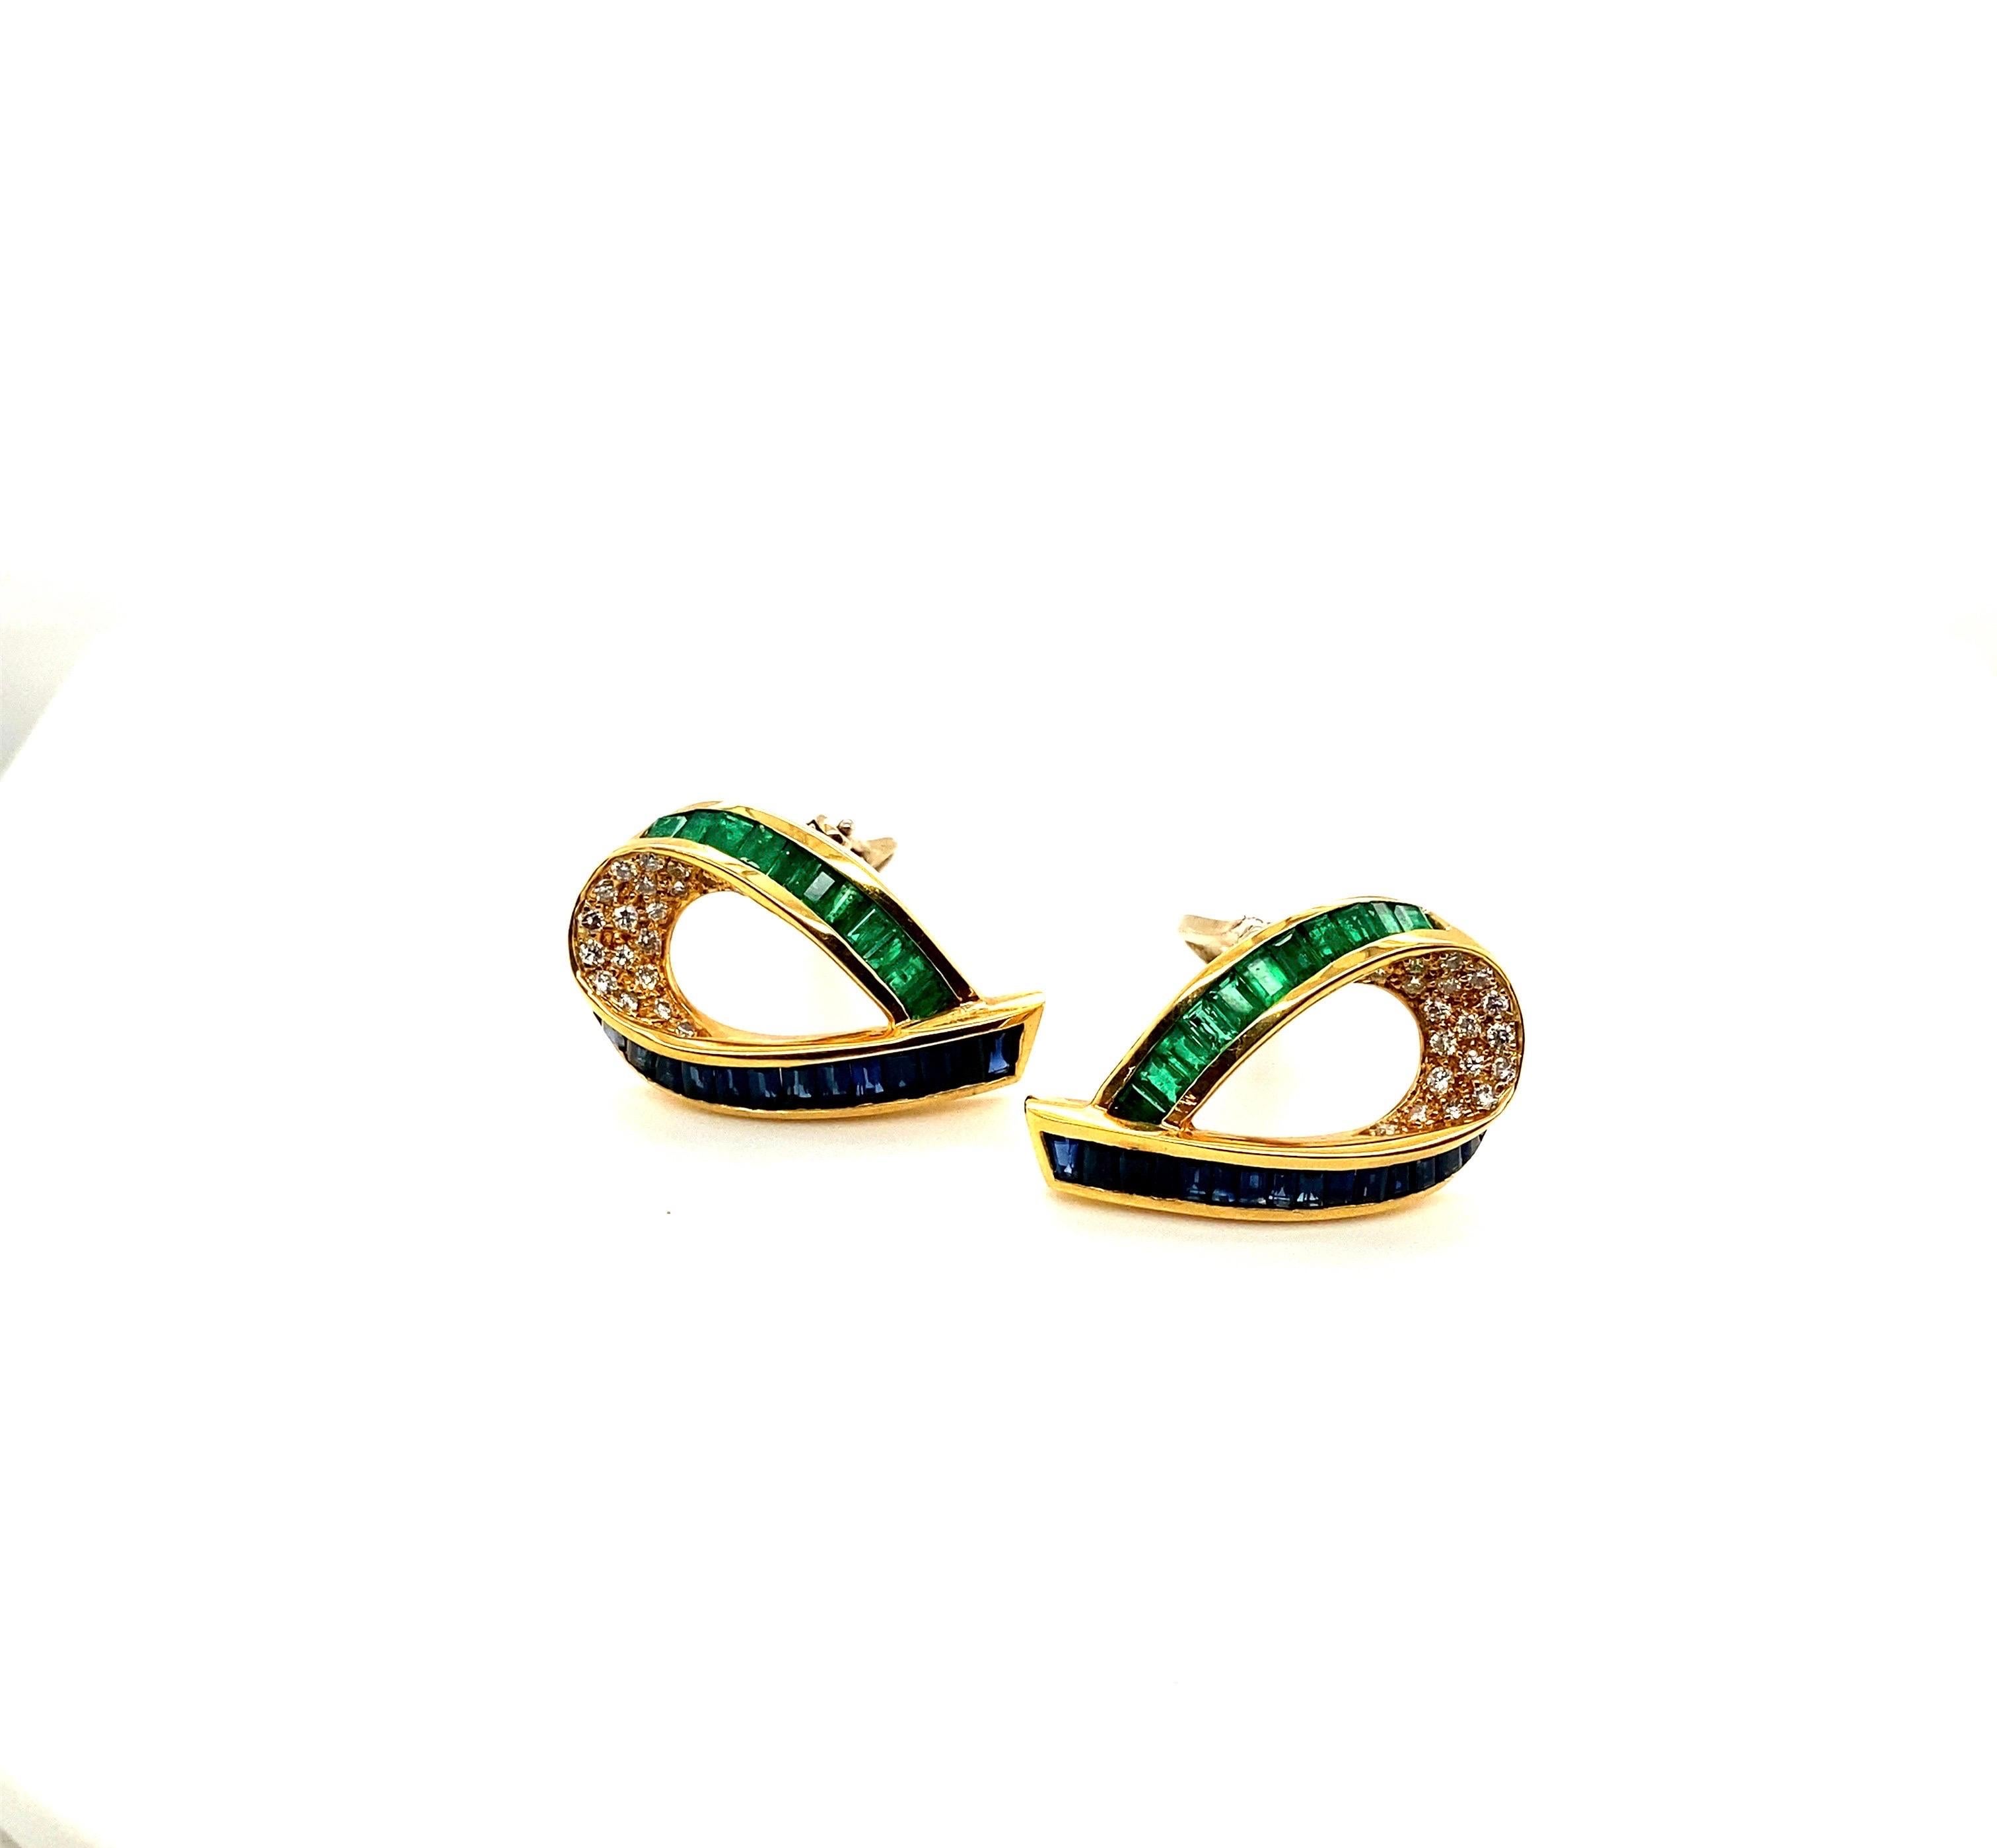 Charles Krypell Jewelry ist eine in New York ansässige Schmuckmarke, die für ihren exquisiten Einsatz von Farben, ihre neuartigen Designs und ihre hervorragende Handwerkskunst international bekannt wurde. Diese Ohrringe aus 18-karätigem Gelbgold mit